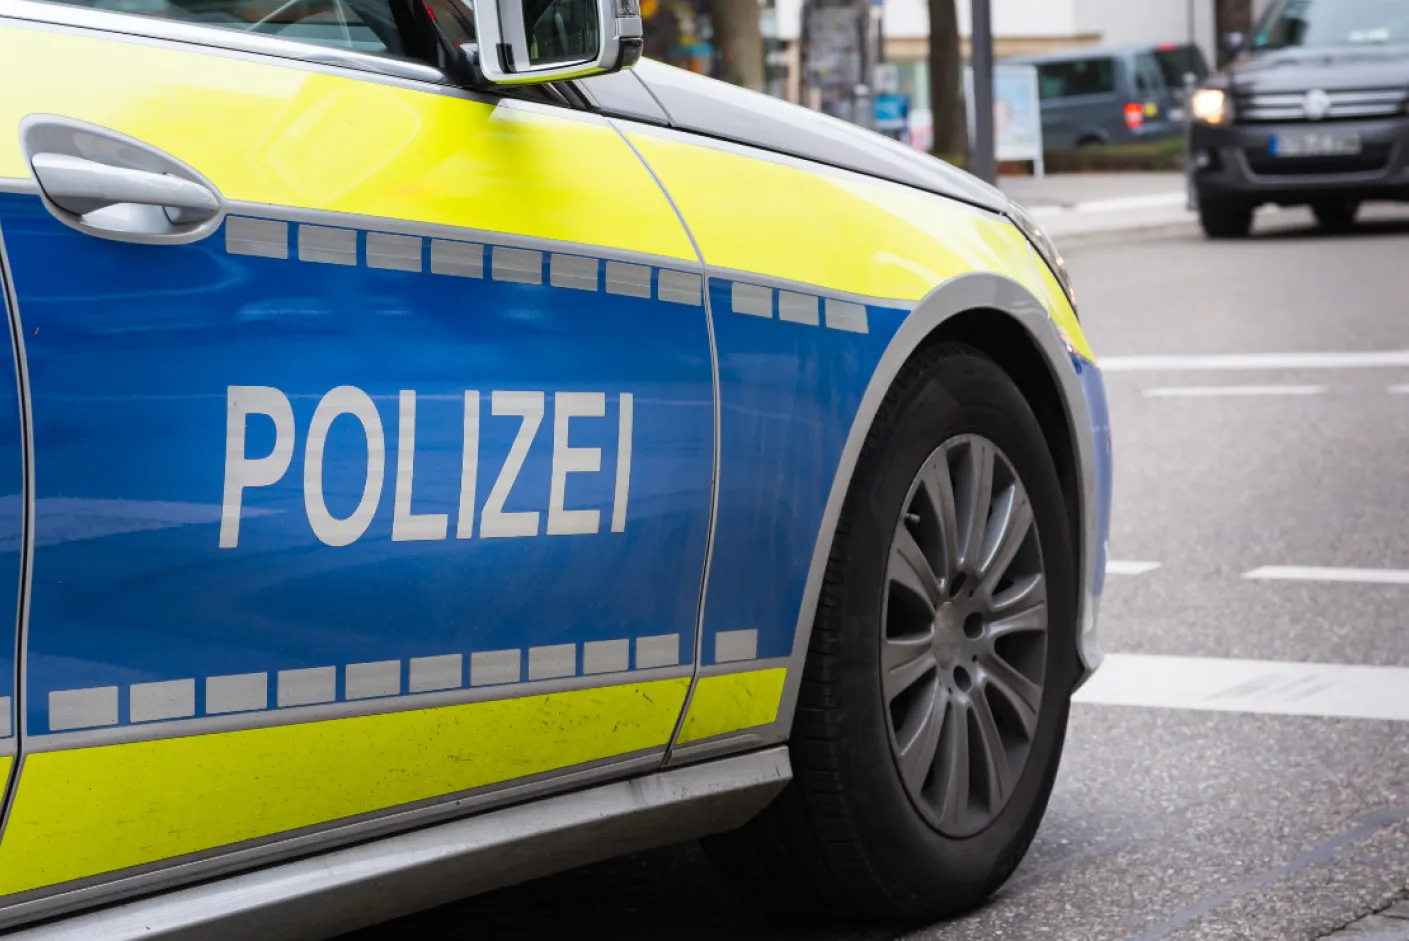 Polizei in Deutschland und Polizisten sowie Einstellungstest